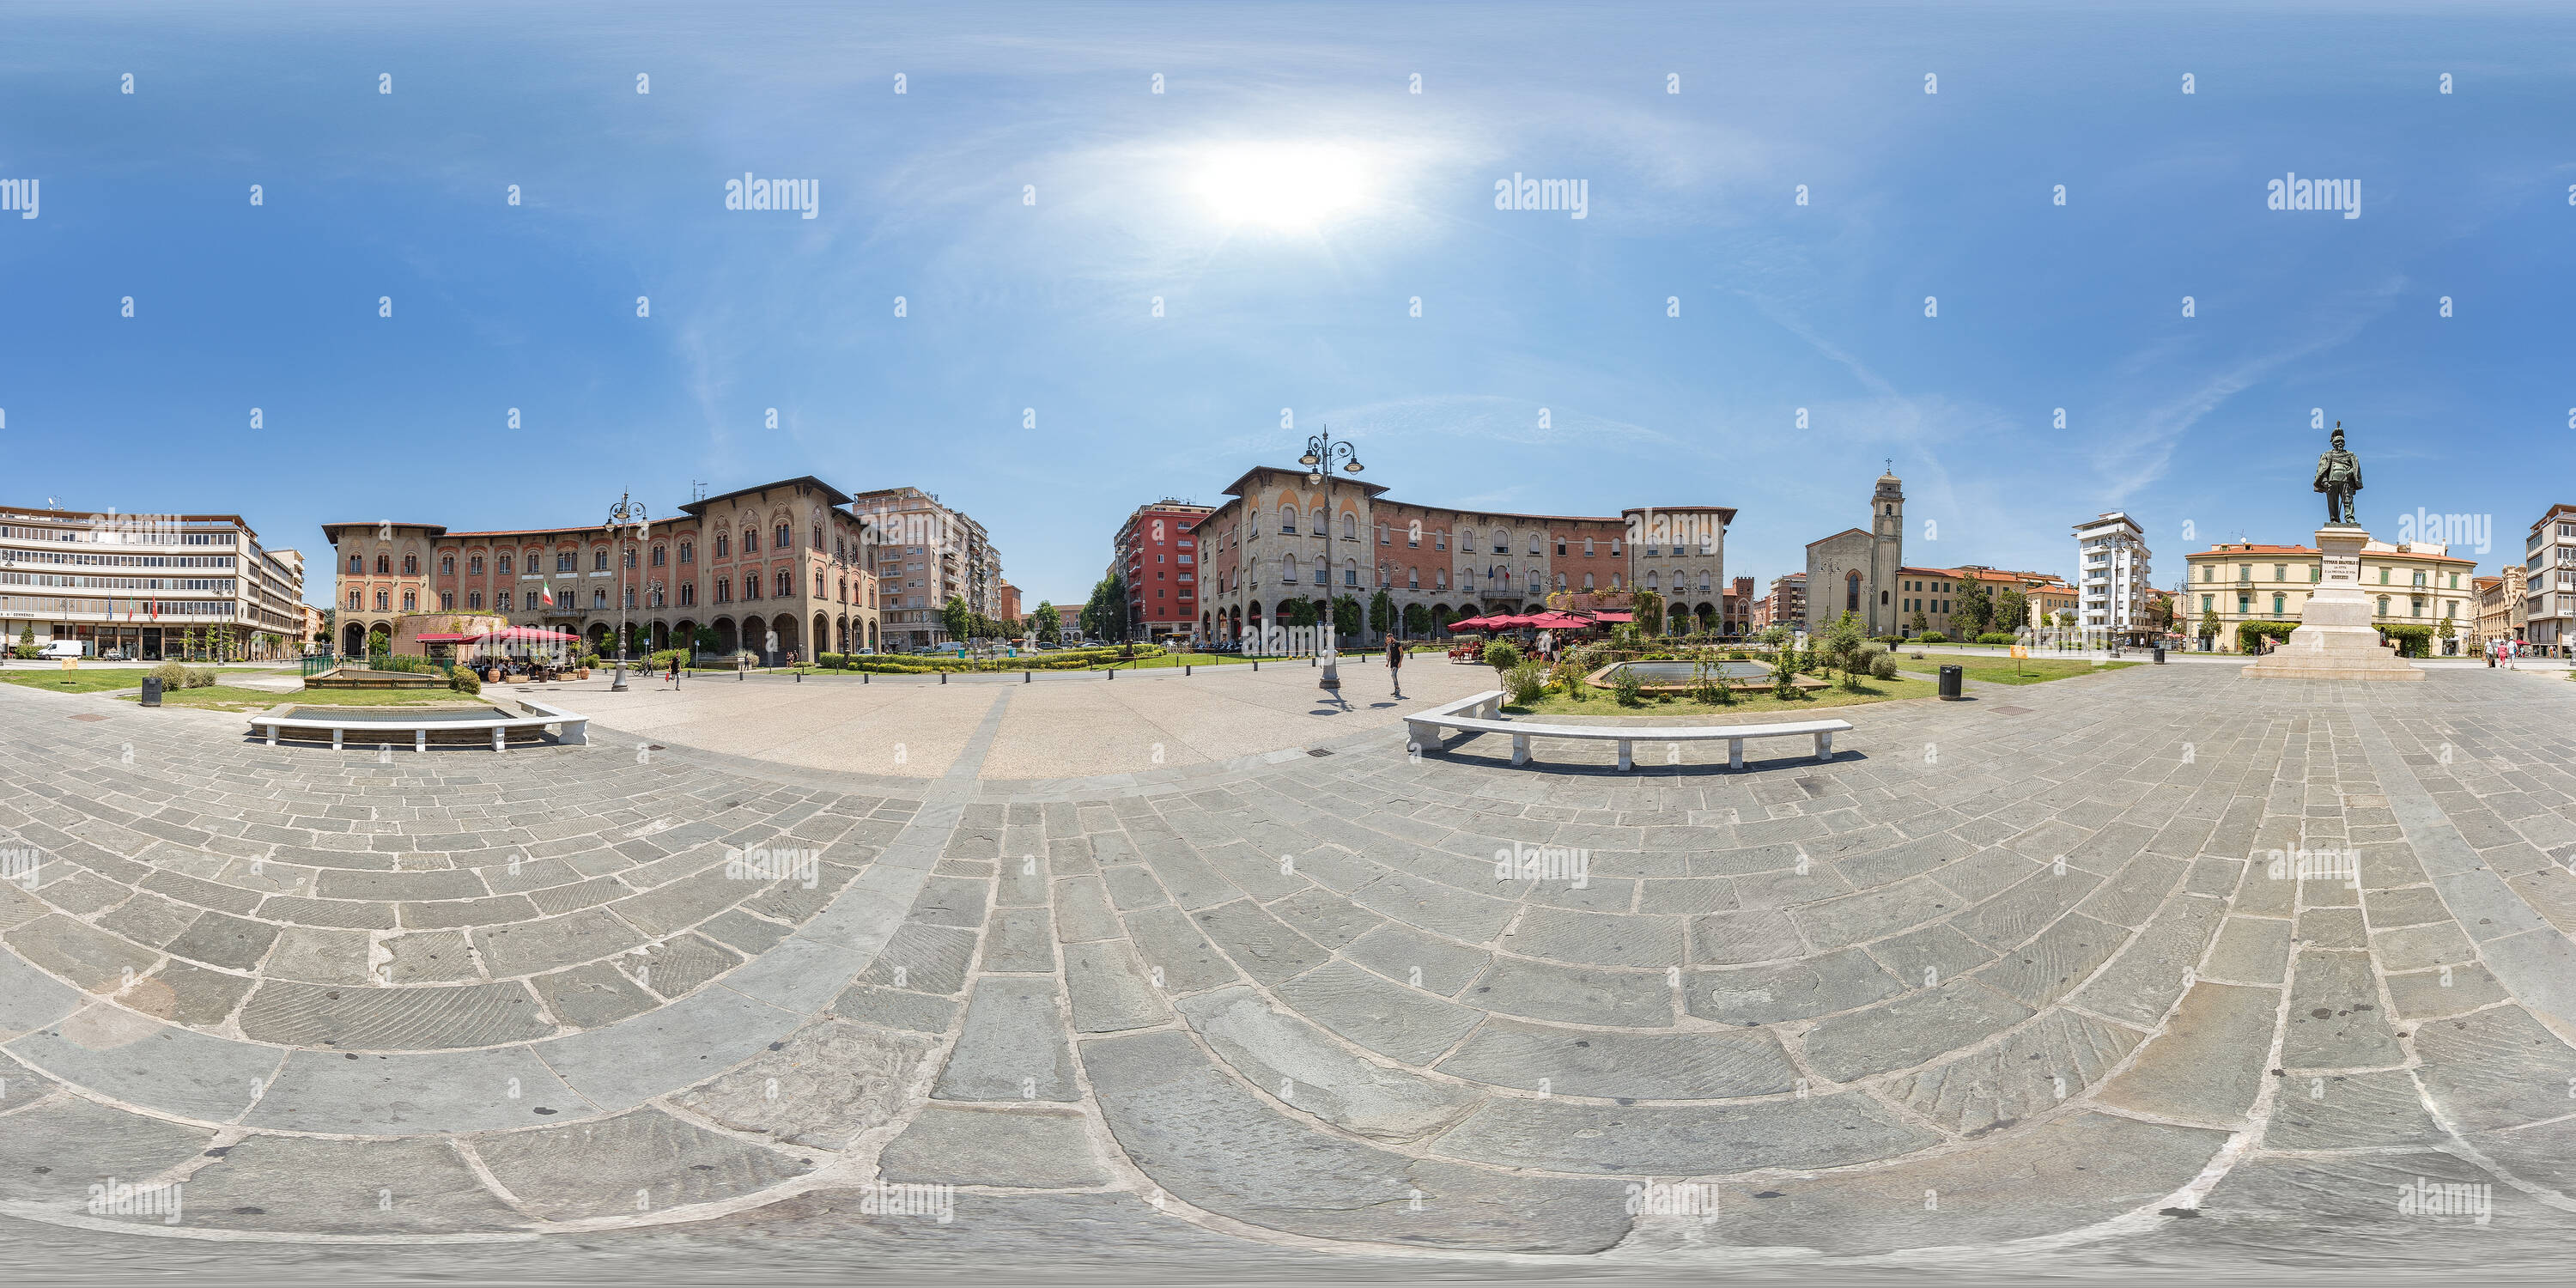 Vue panoramique à 360° de Piazza Vittorio Emanuele II. Pise.